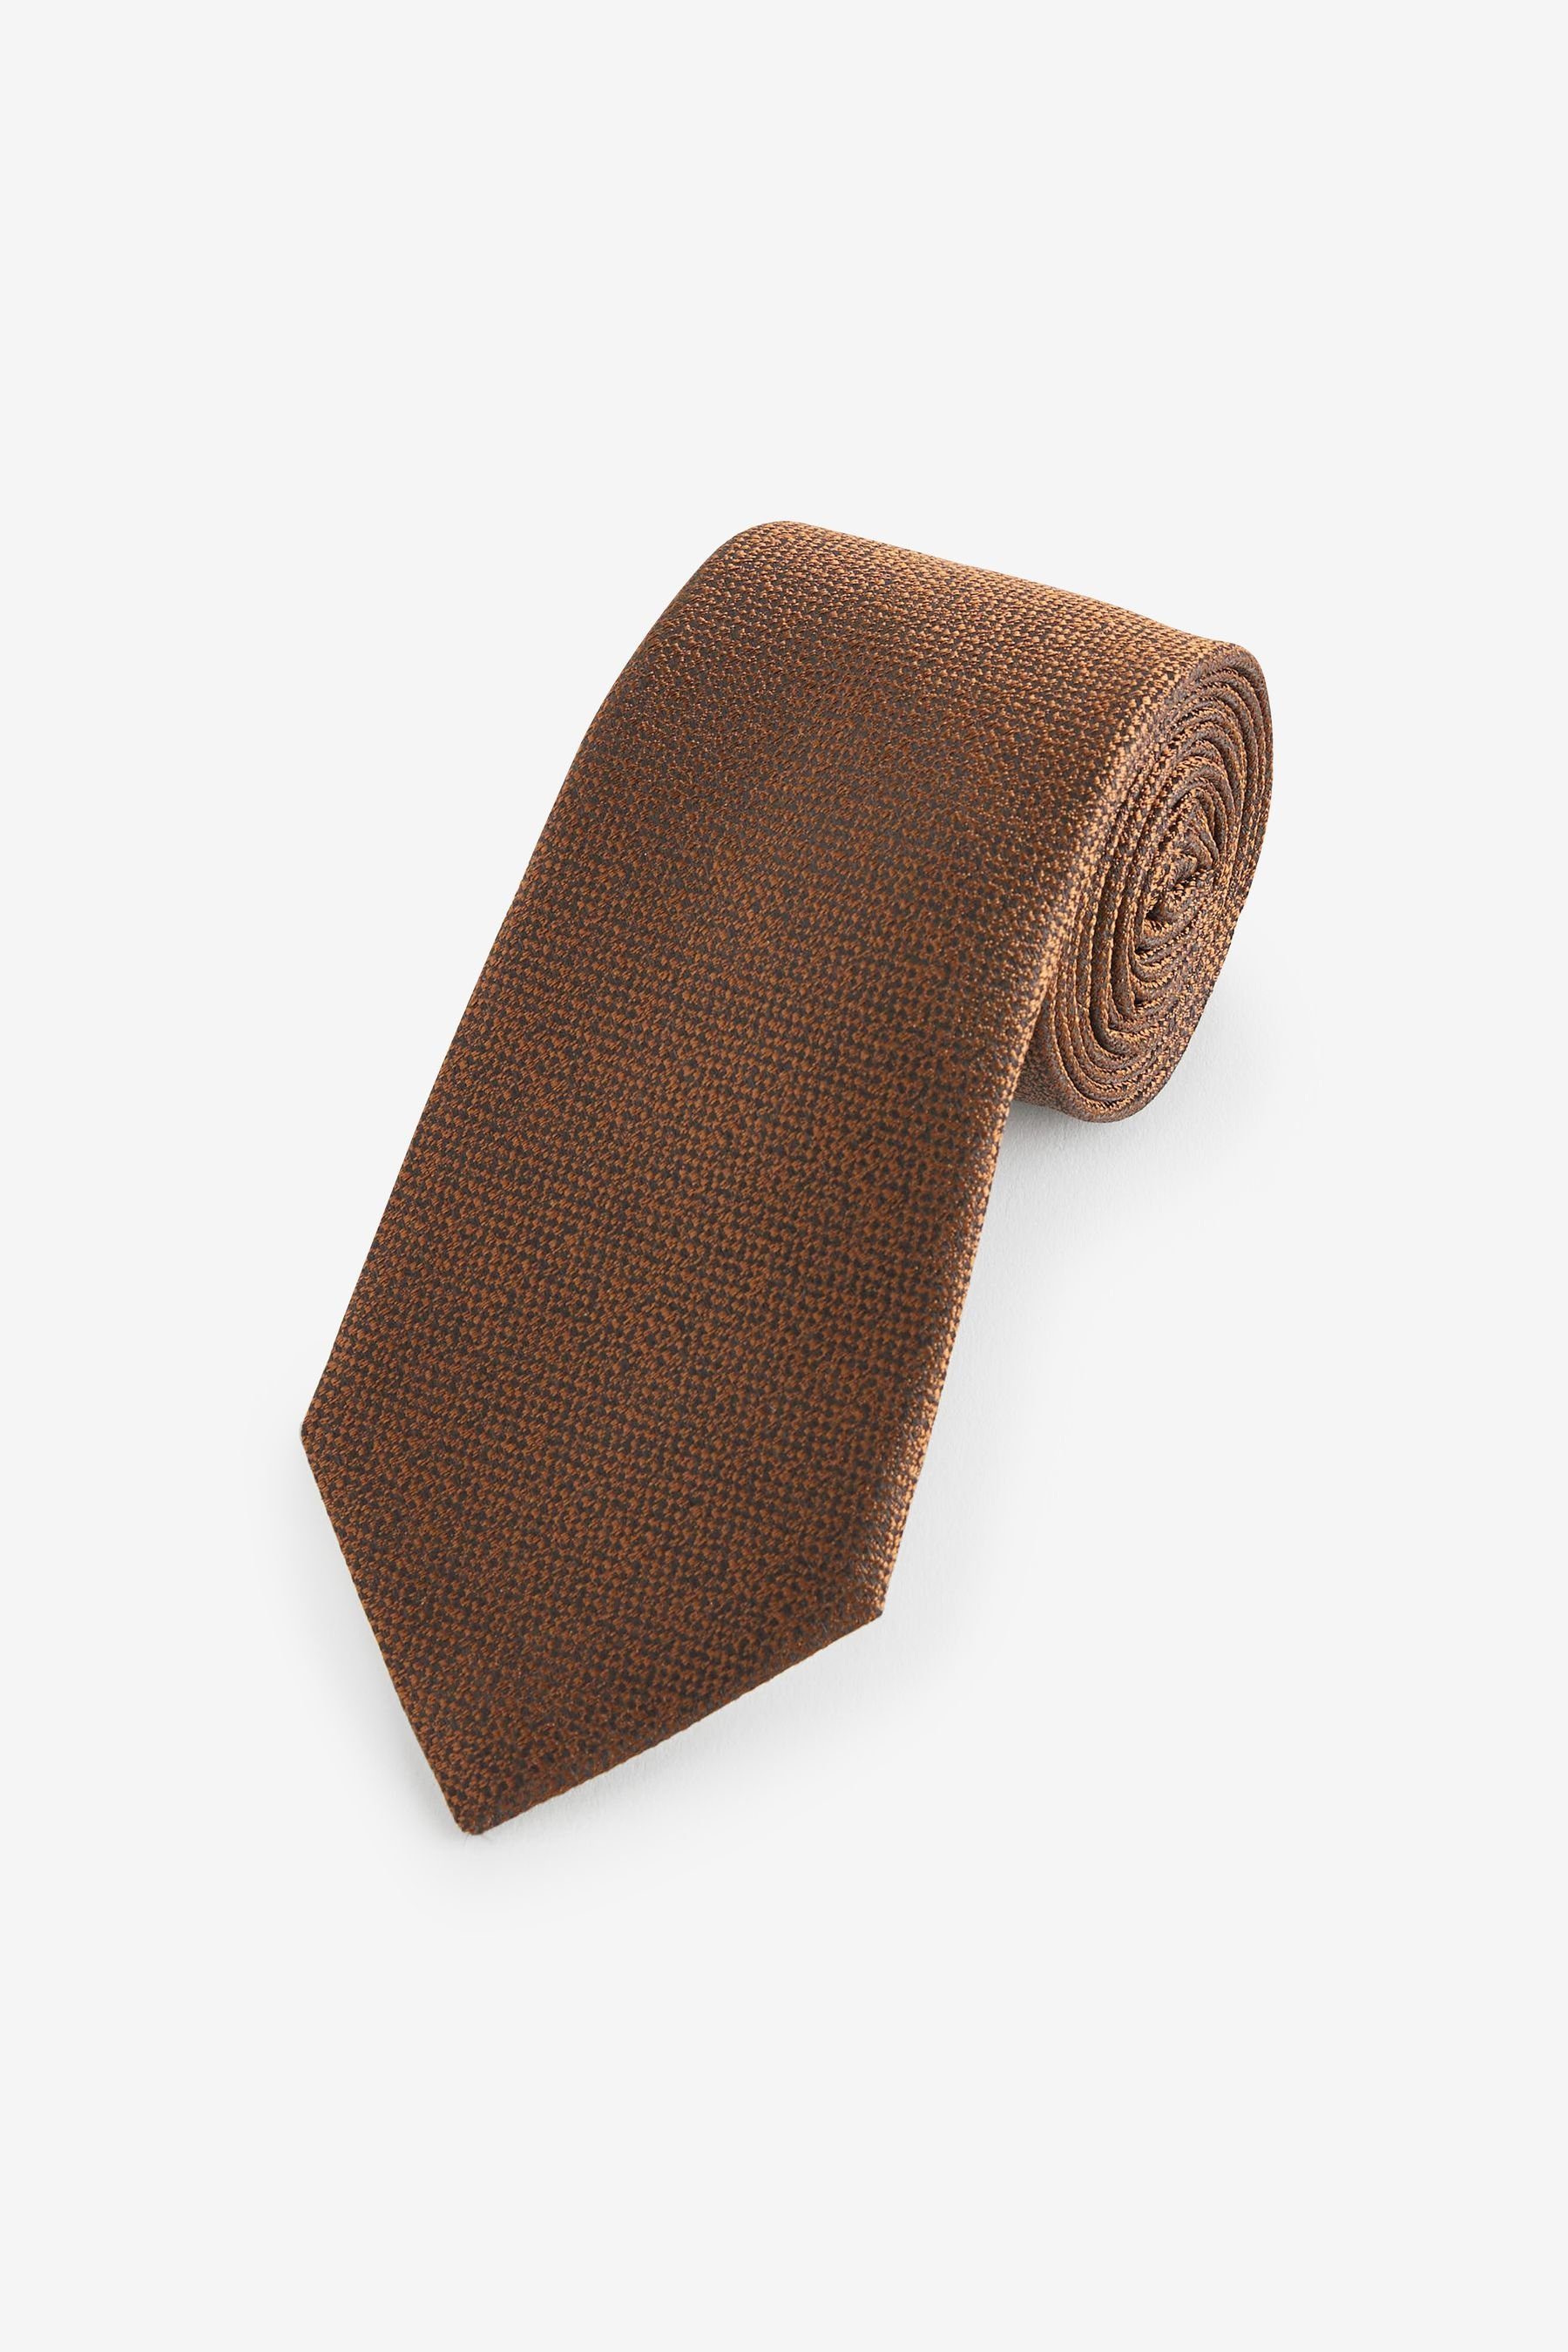 England (1-St), Design aus hergestellt Aktuelles Next Krawatte * Signature-Krawatte, in Italien